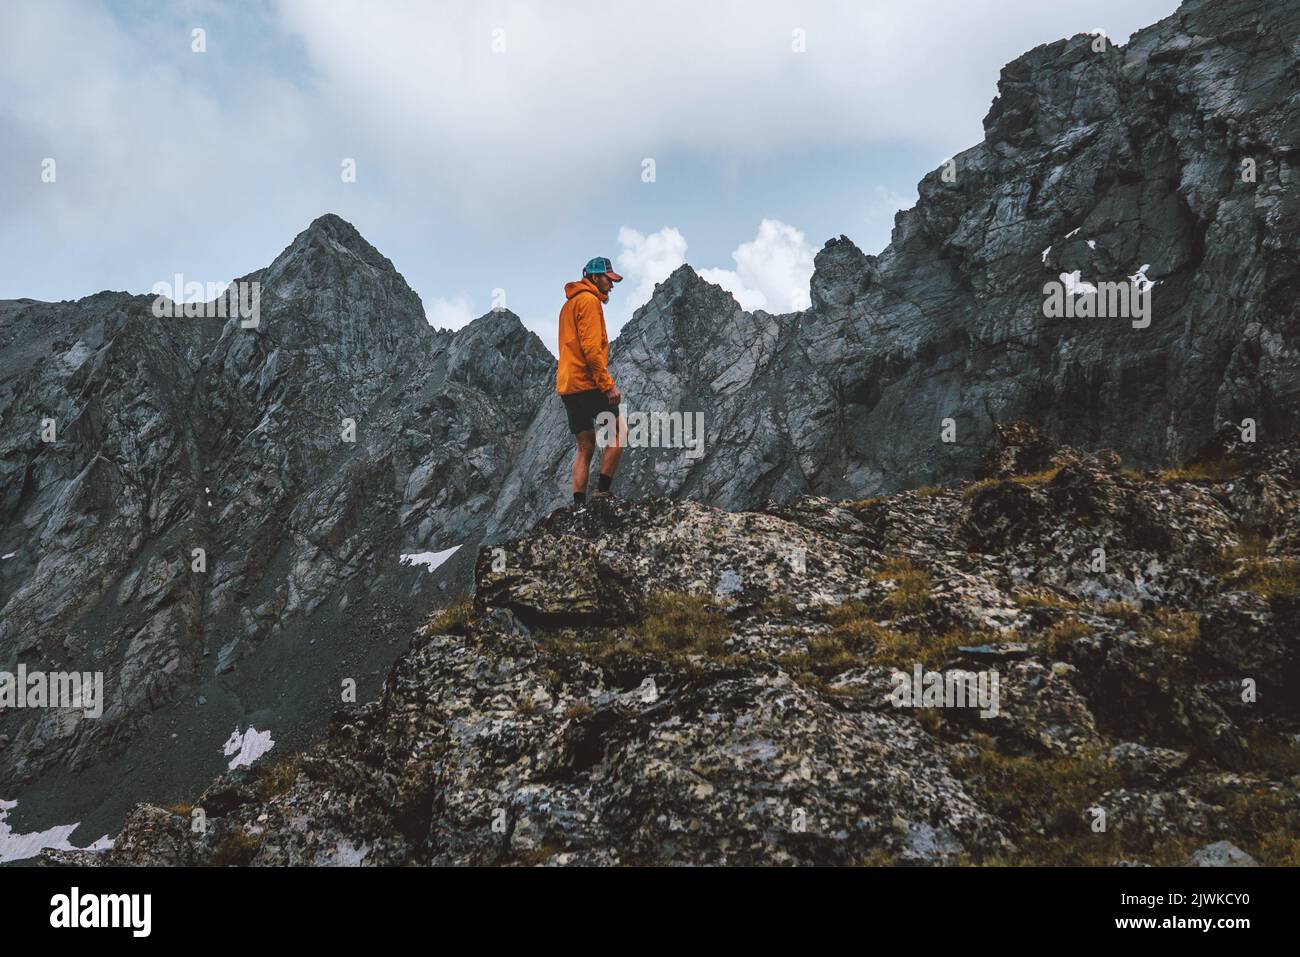 Mann Klettern Berge allein Reise Wandern Expedition Abenteuer Urlaub Reise Outdoor aktiv Hobby gesunder Lebensstil Freiheit Konzept Stockfoto